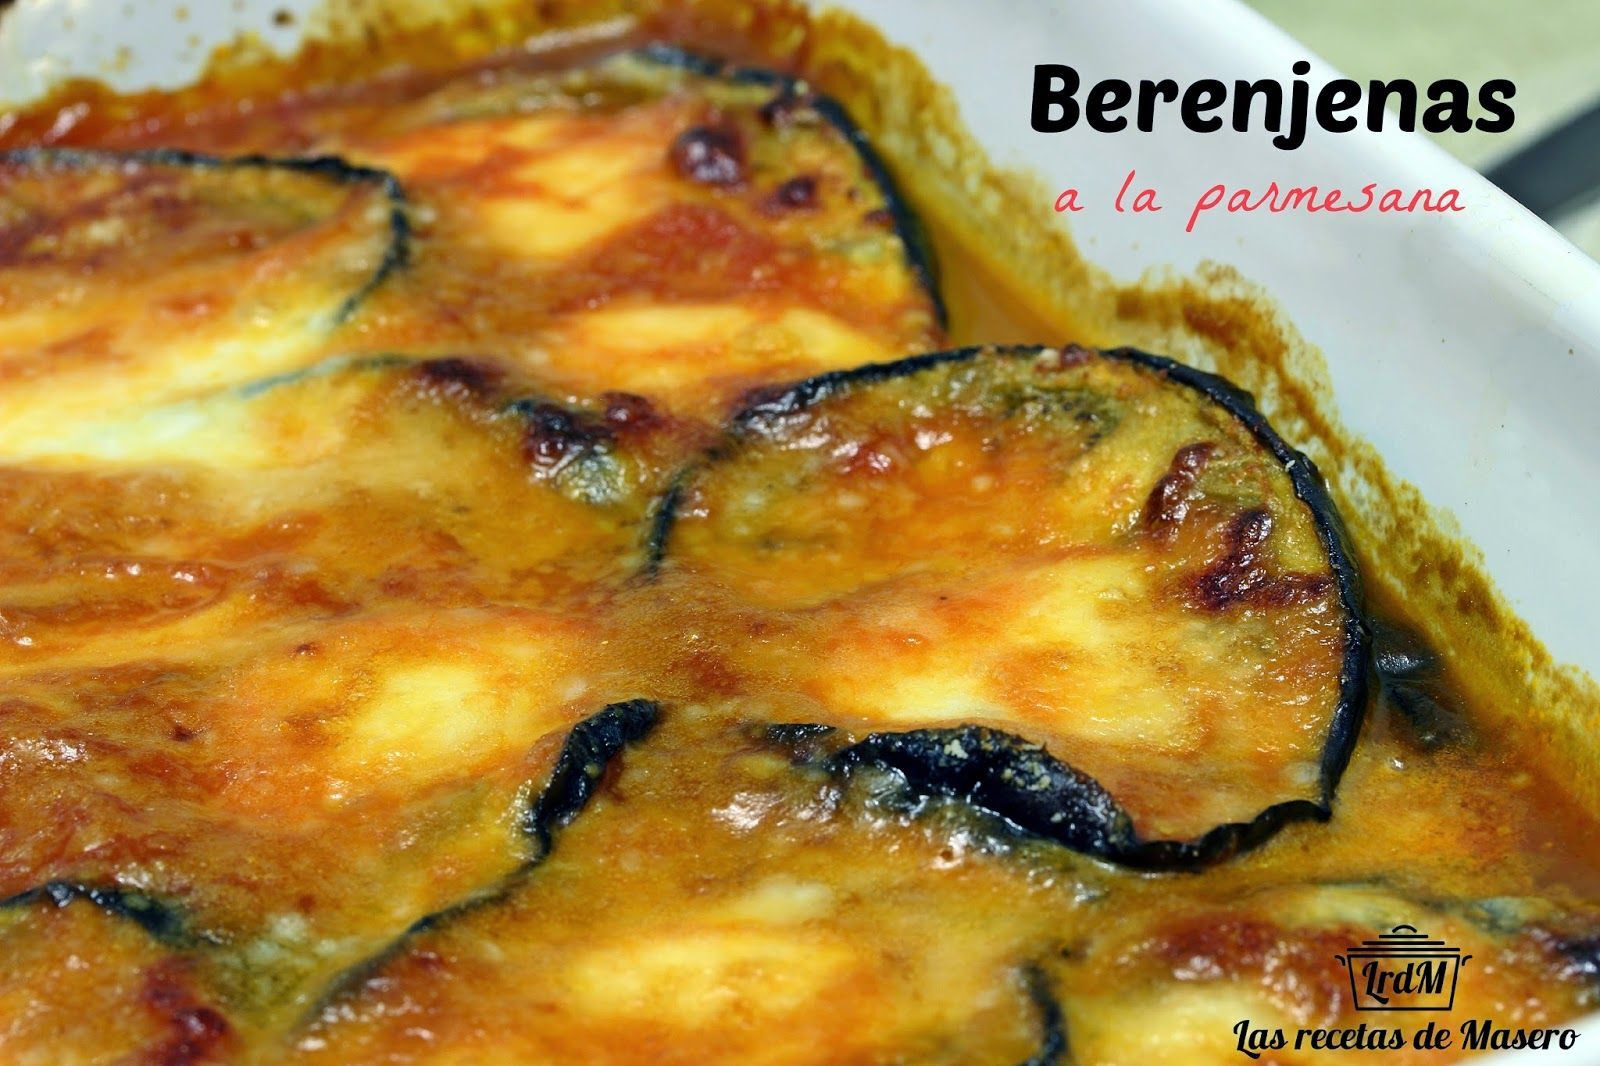 Berenjenas a la parmesana, parmigiana di melanzane - Receta Petitchef